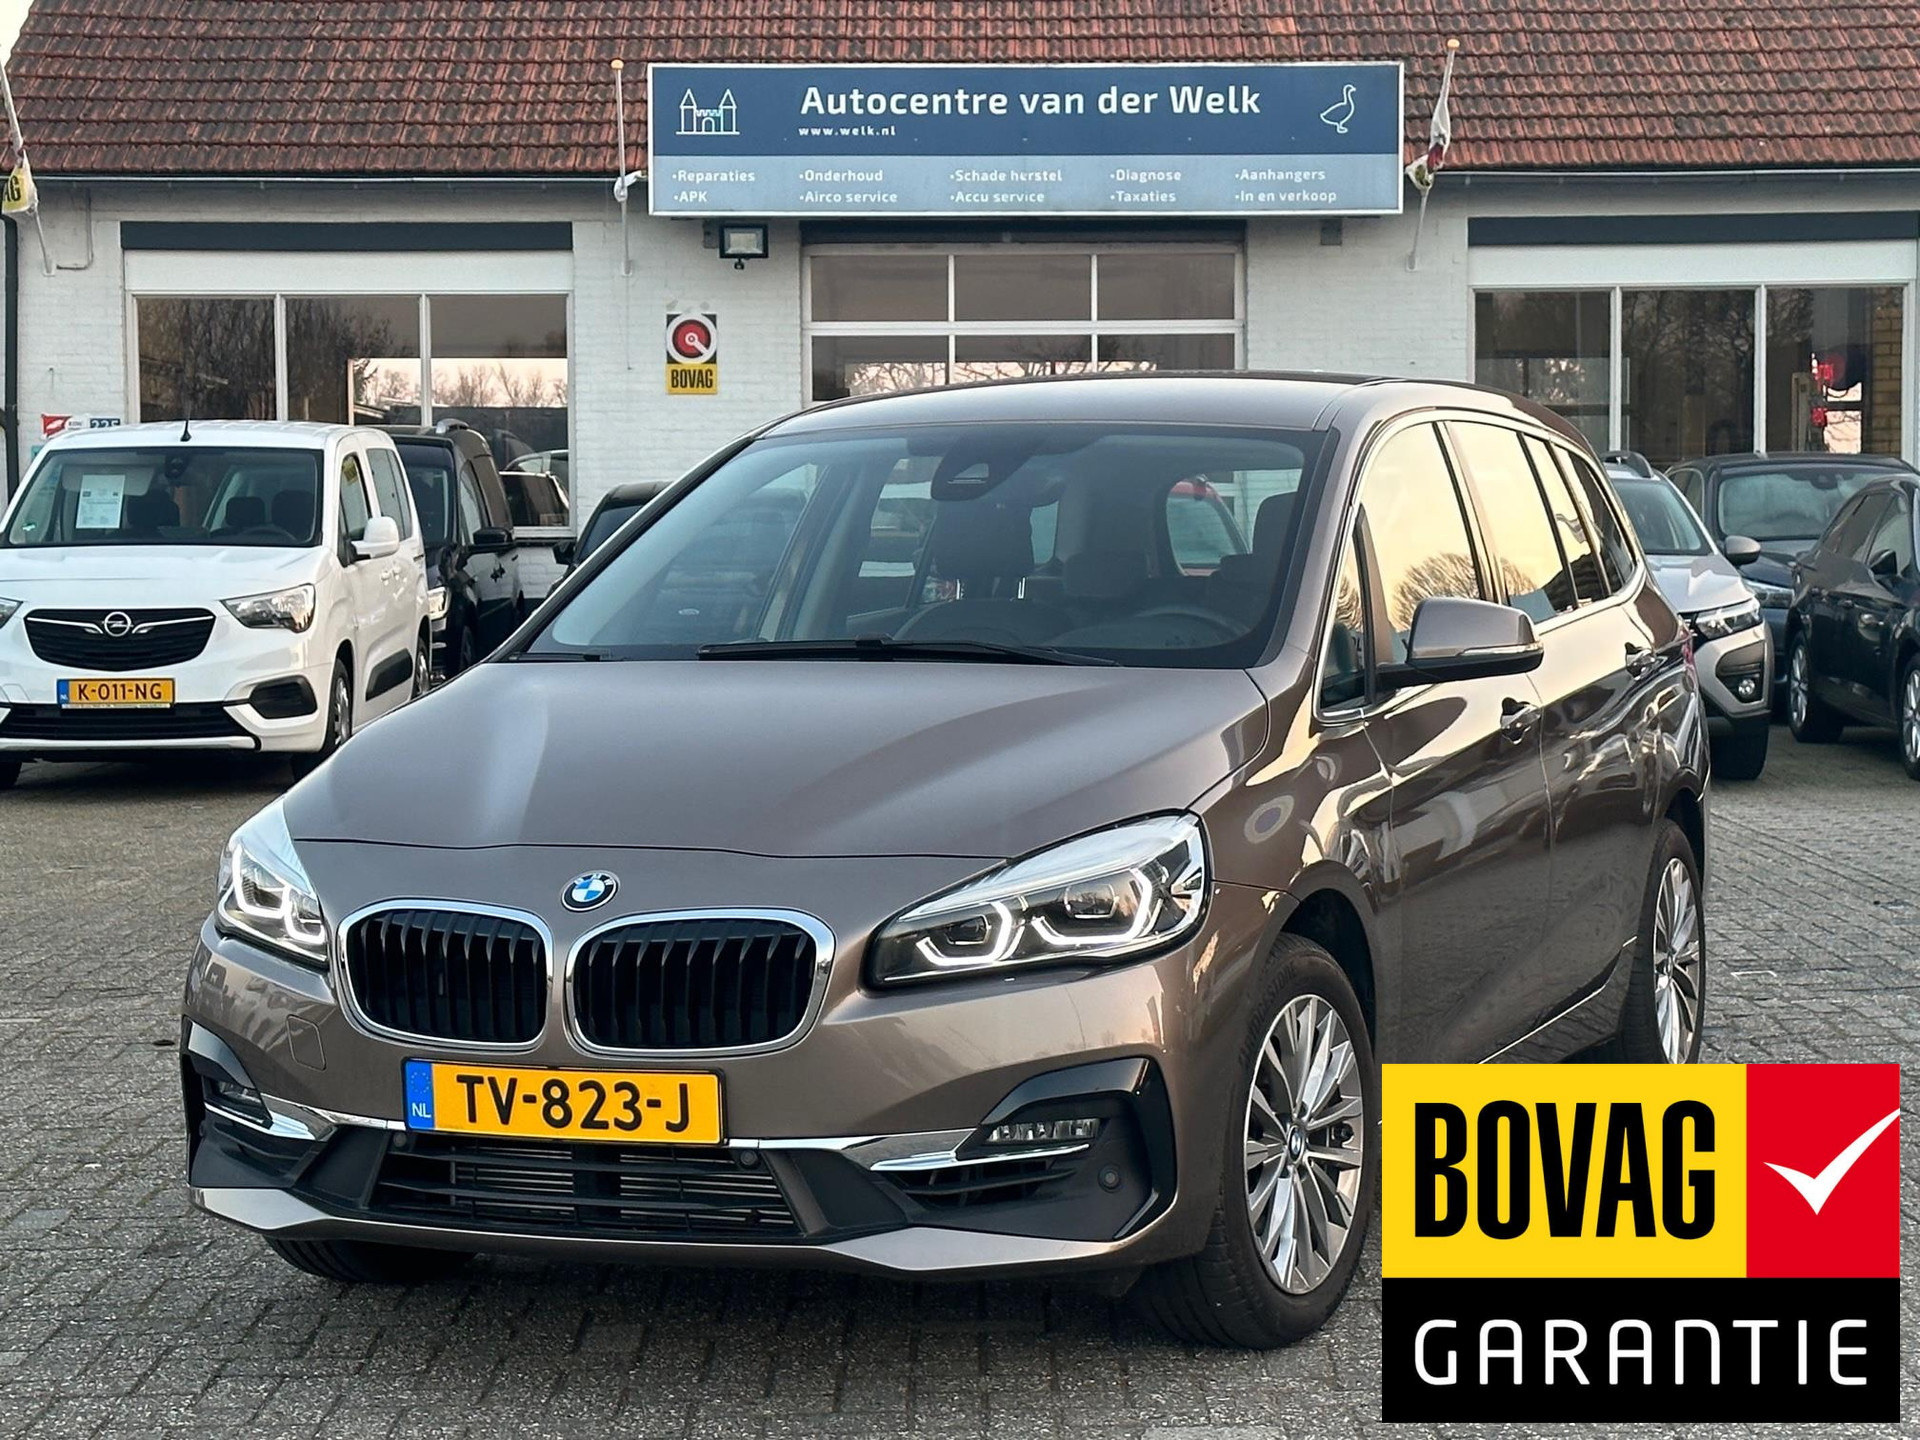 BMW 2-serie Gran Tourer 216i Corporate Lease Executive BOVAG garantie!! bij viaBOVAG.nl